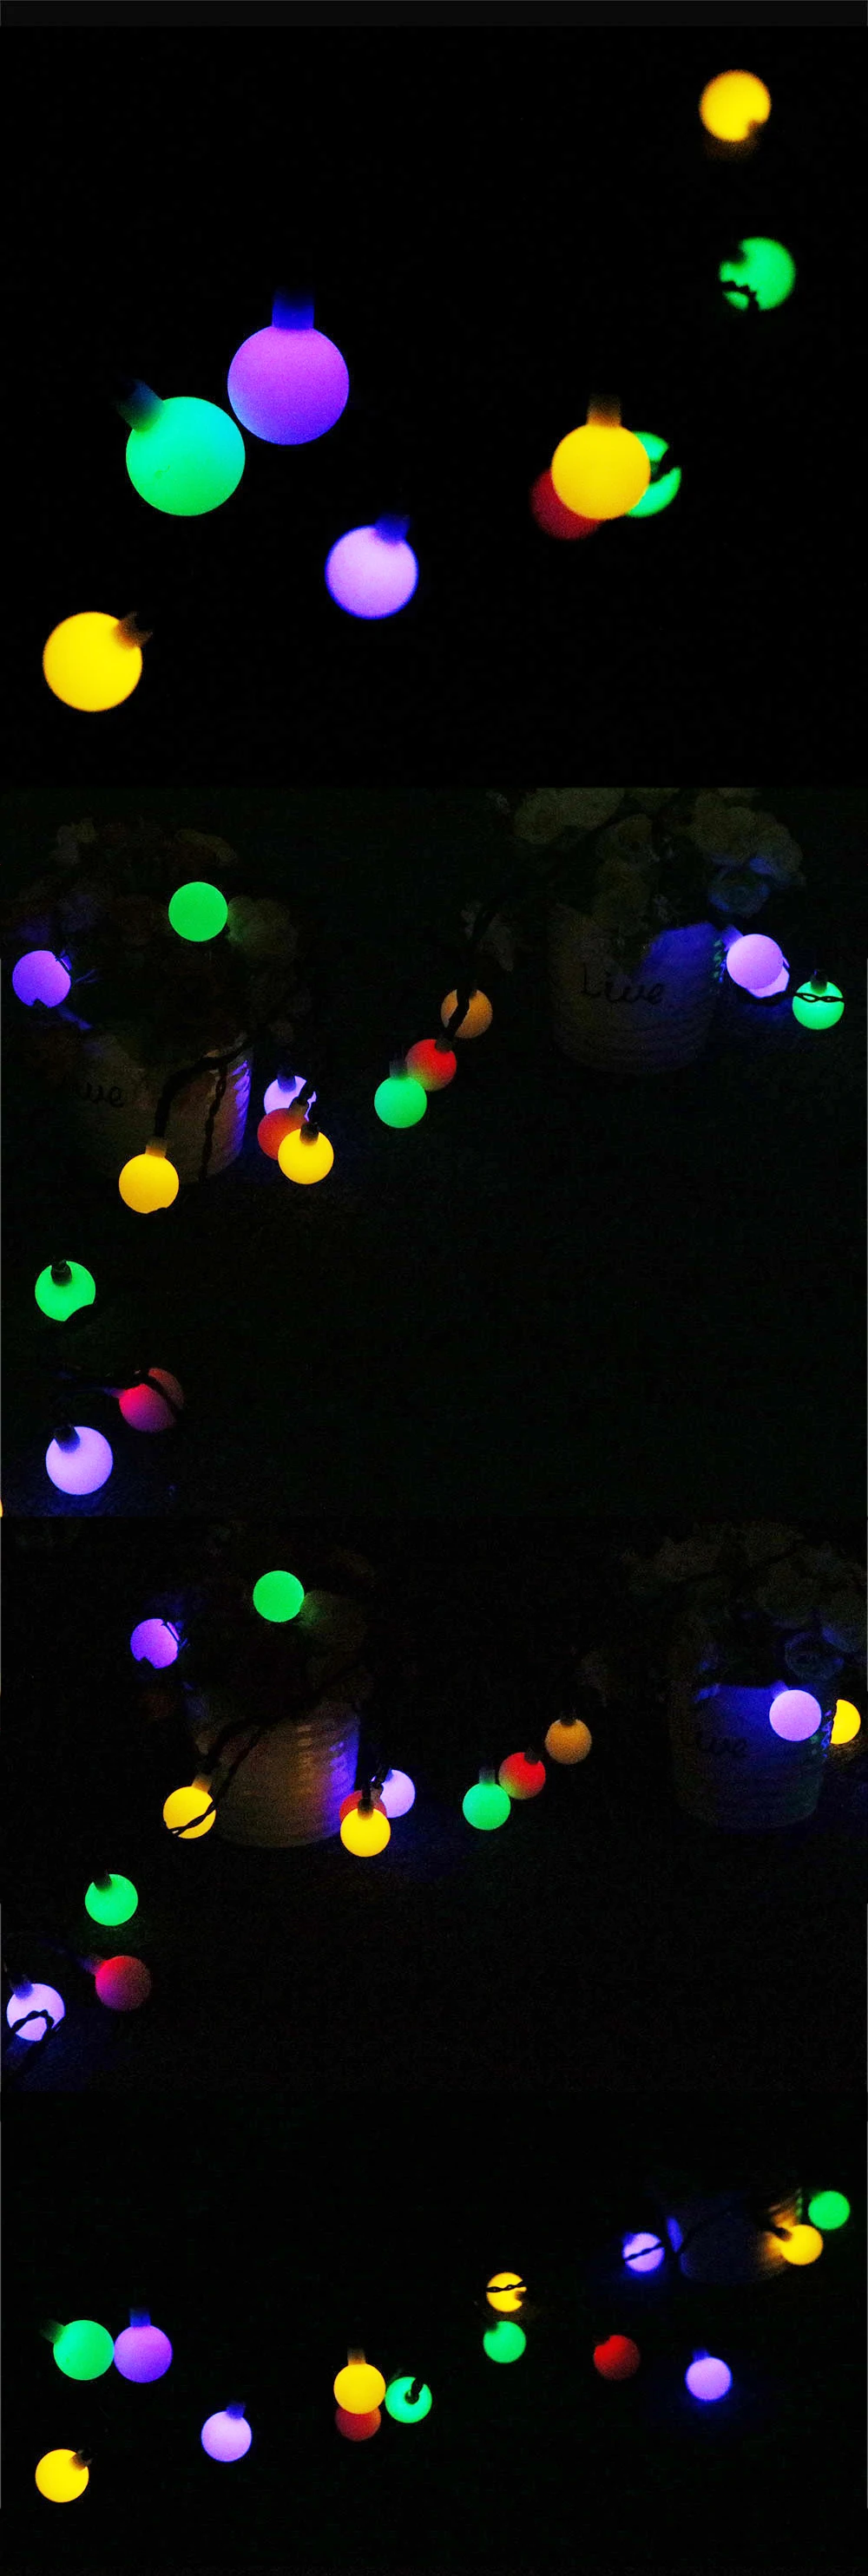 ITimo световая гирлянда 50 светодиодный 7 м шариковая струна мигалка на солнечных батареях Рождественский свет для дома сада газон вечерние декоративные светильники